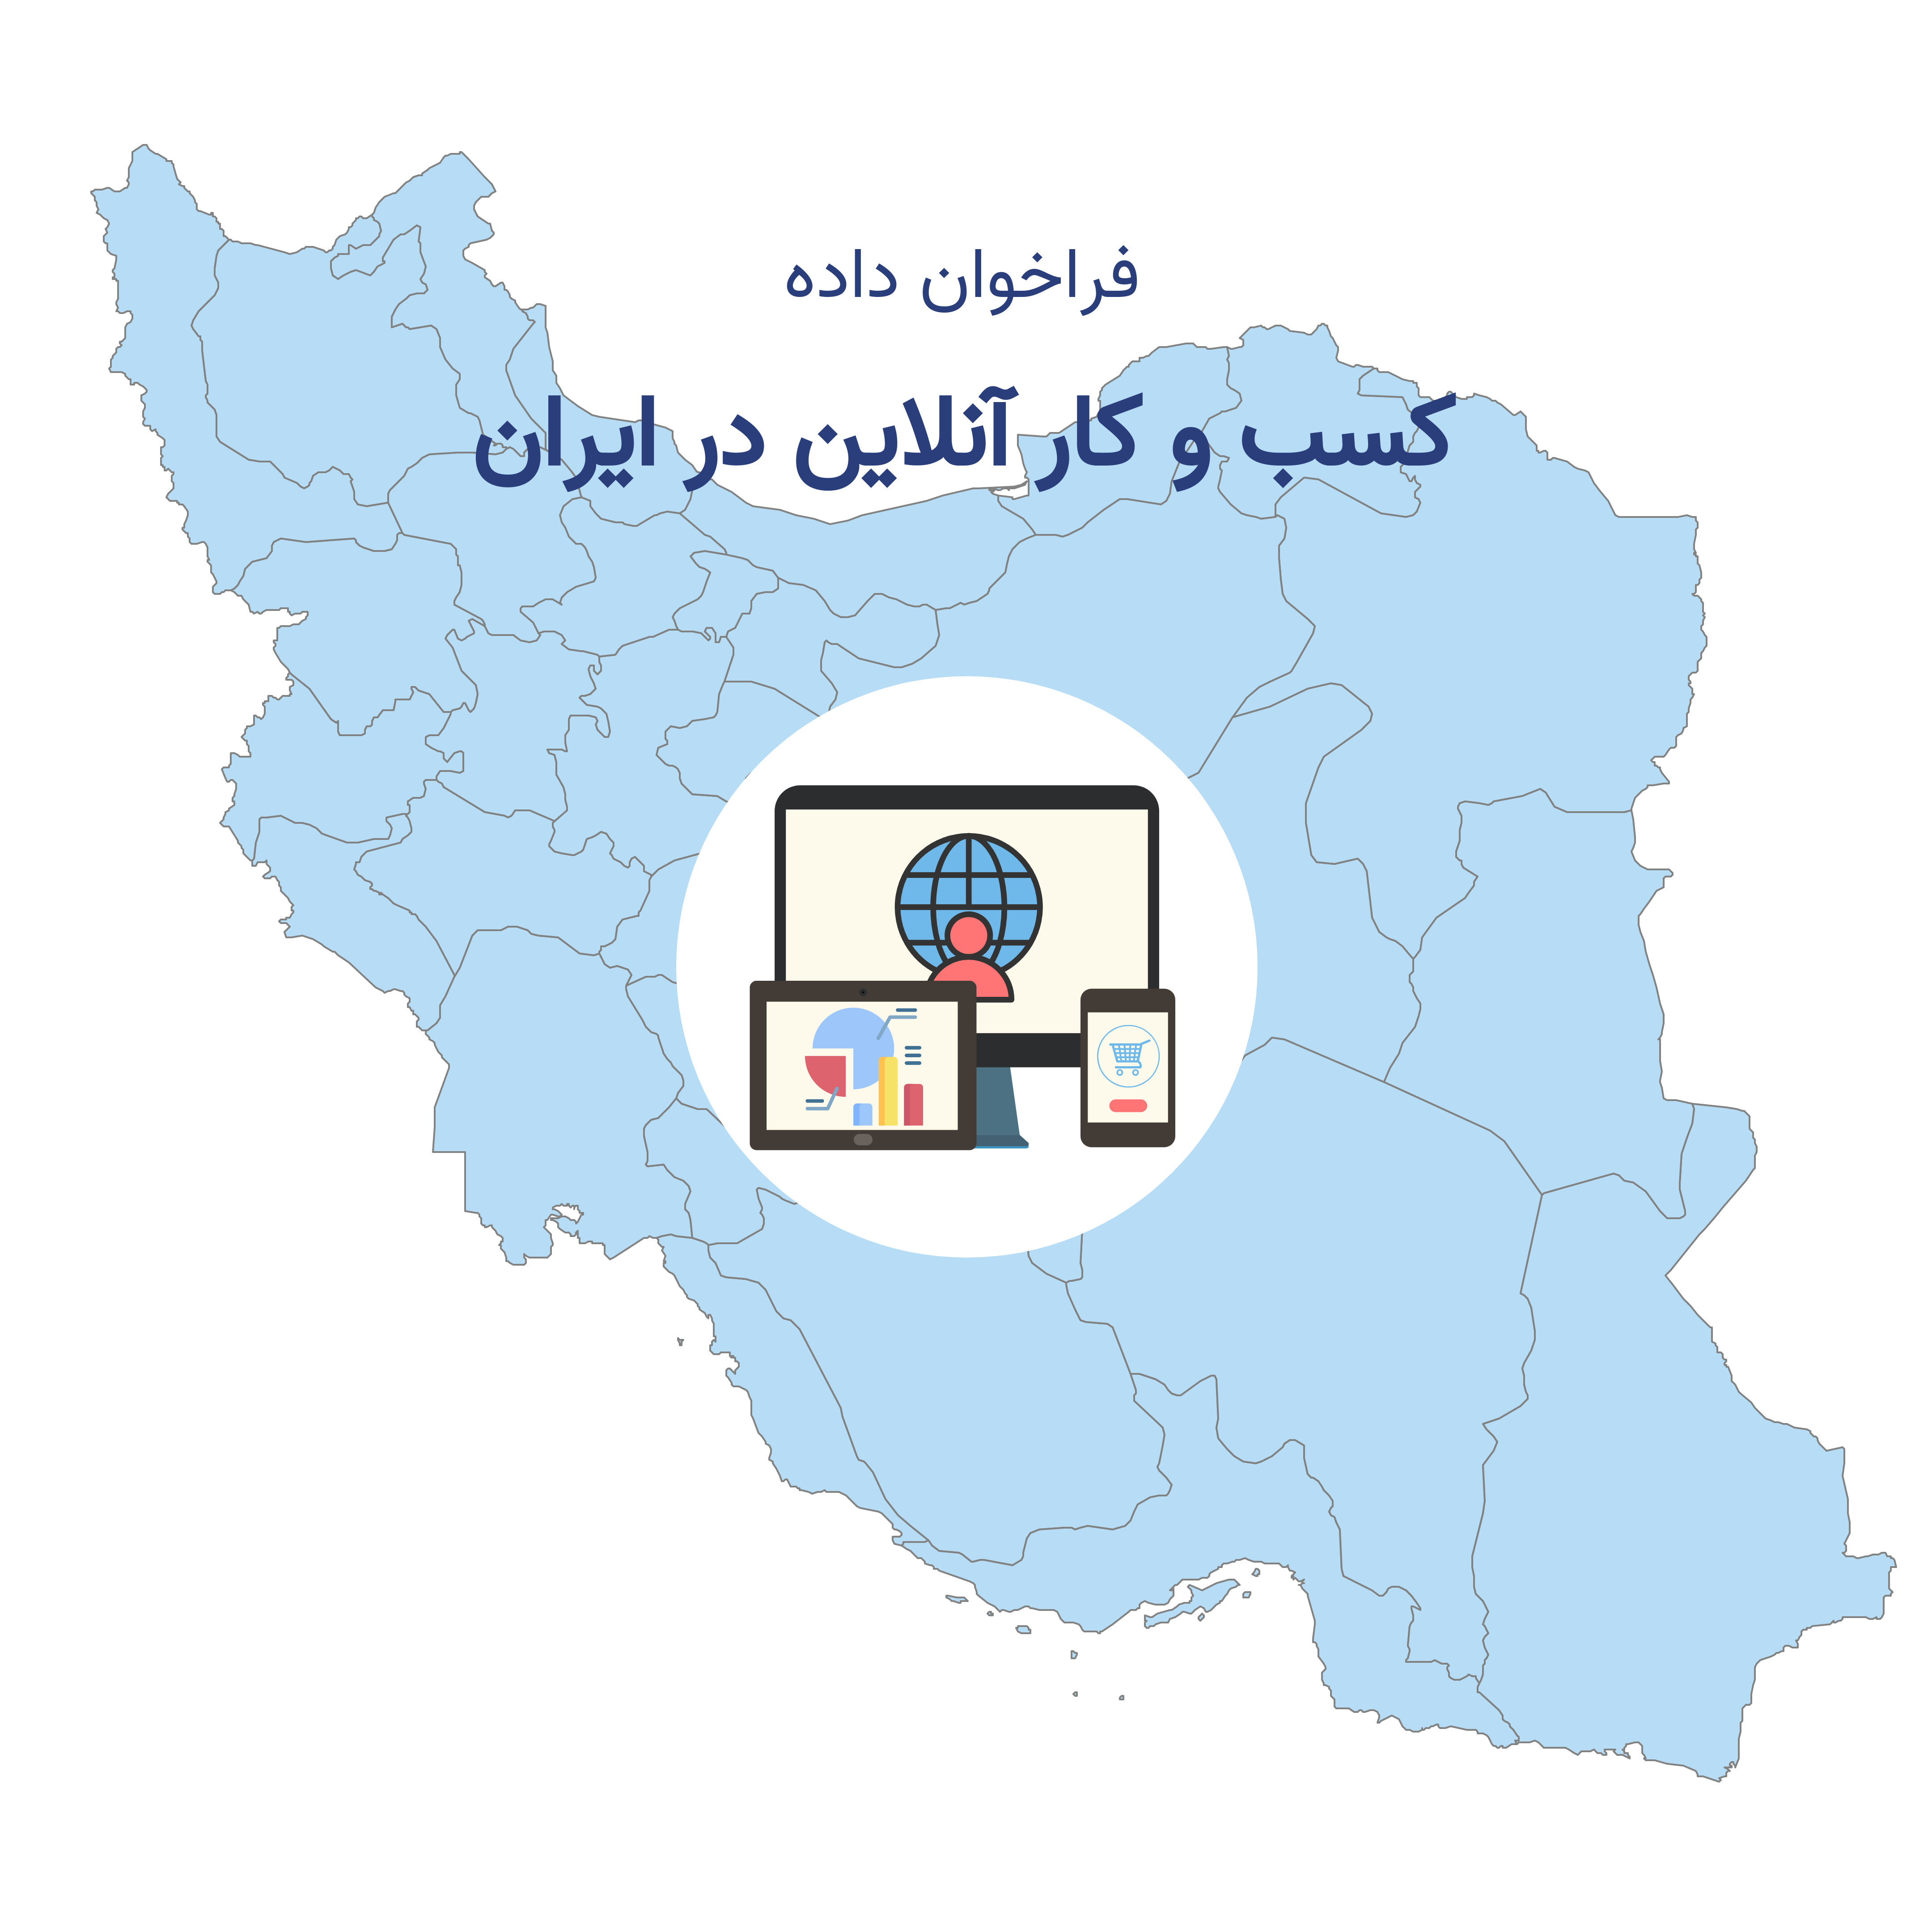 کسب و کار آنلاین در ایران